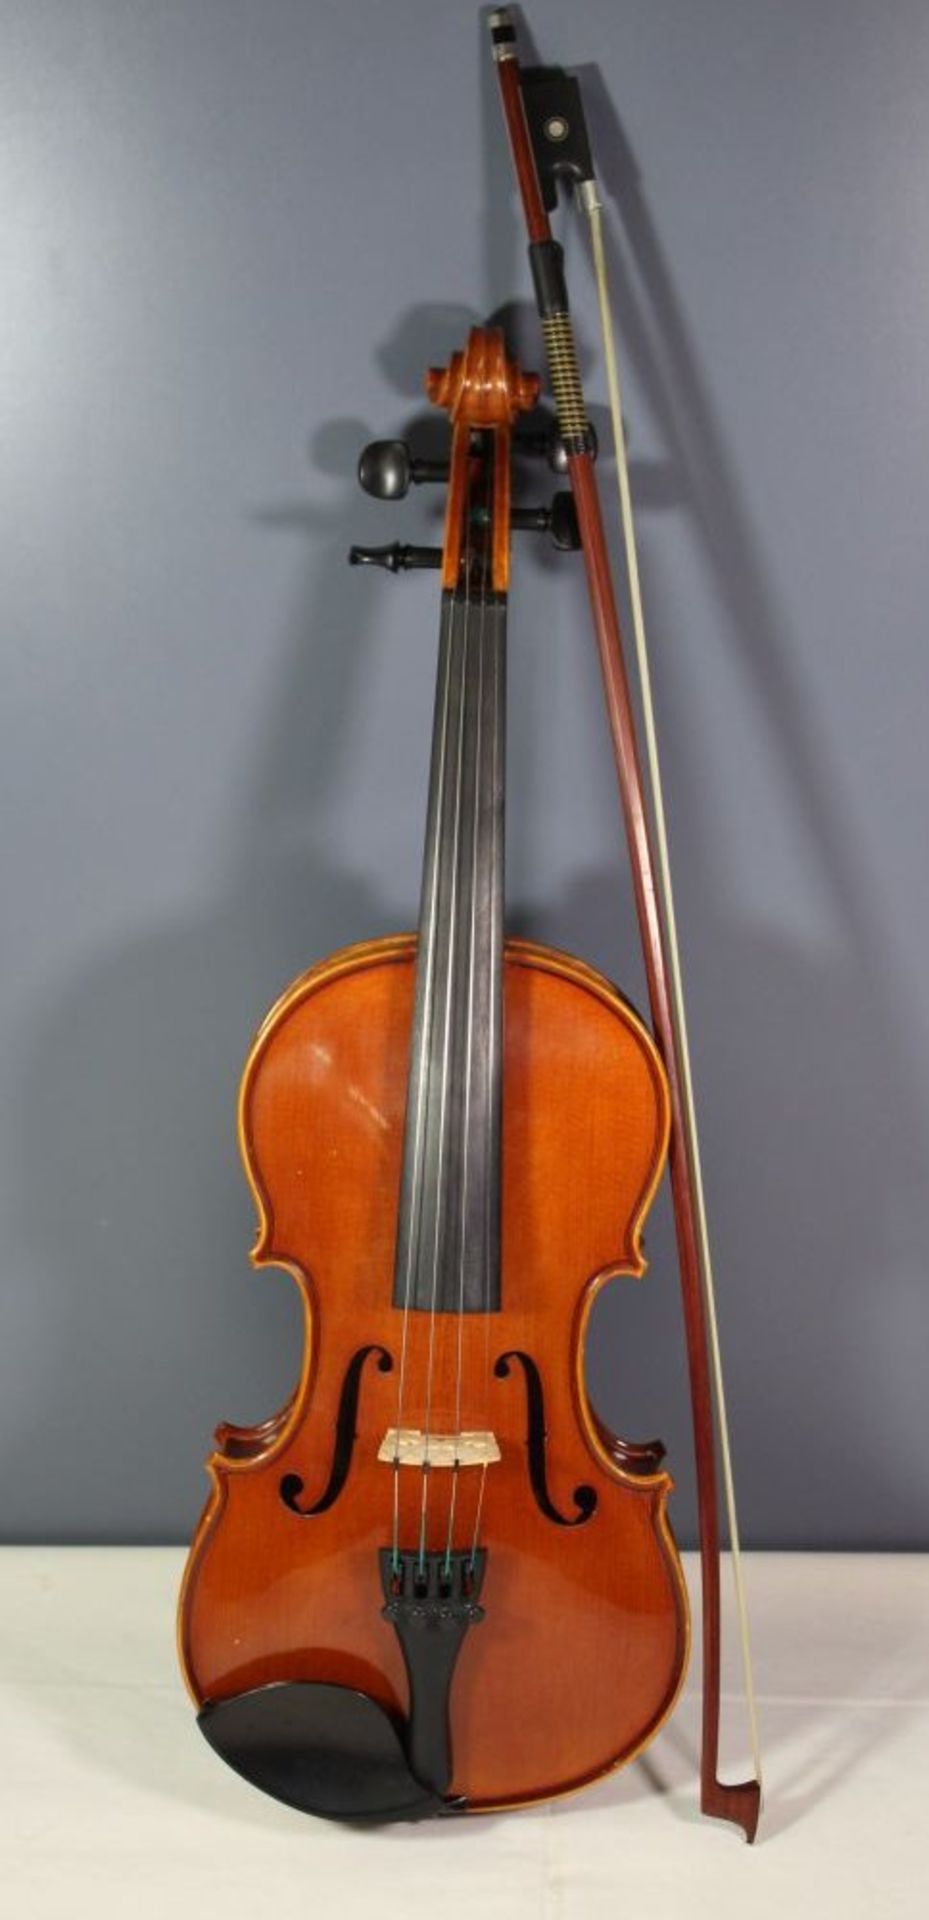 Geige, innen Klebeetikett "Intrumentenbau Mittenwald -Adorf", guter Zustand, anbei Bogen, L-57cm, in